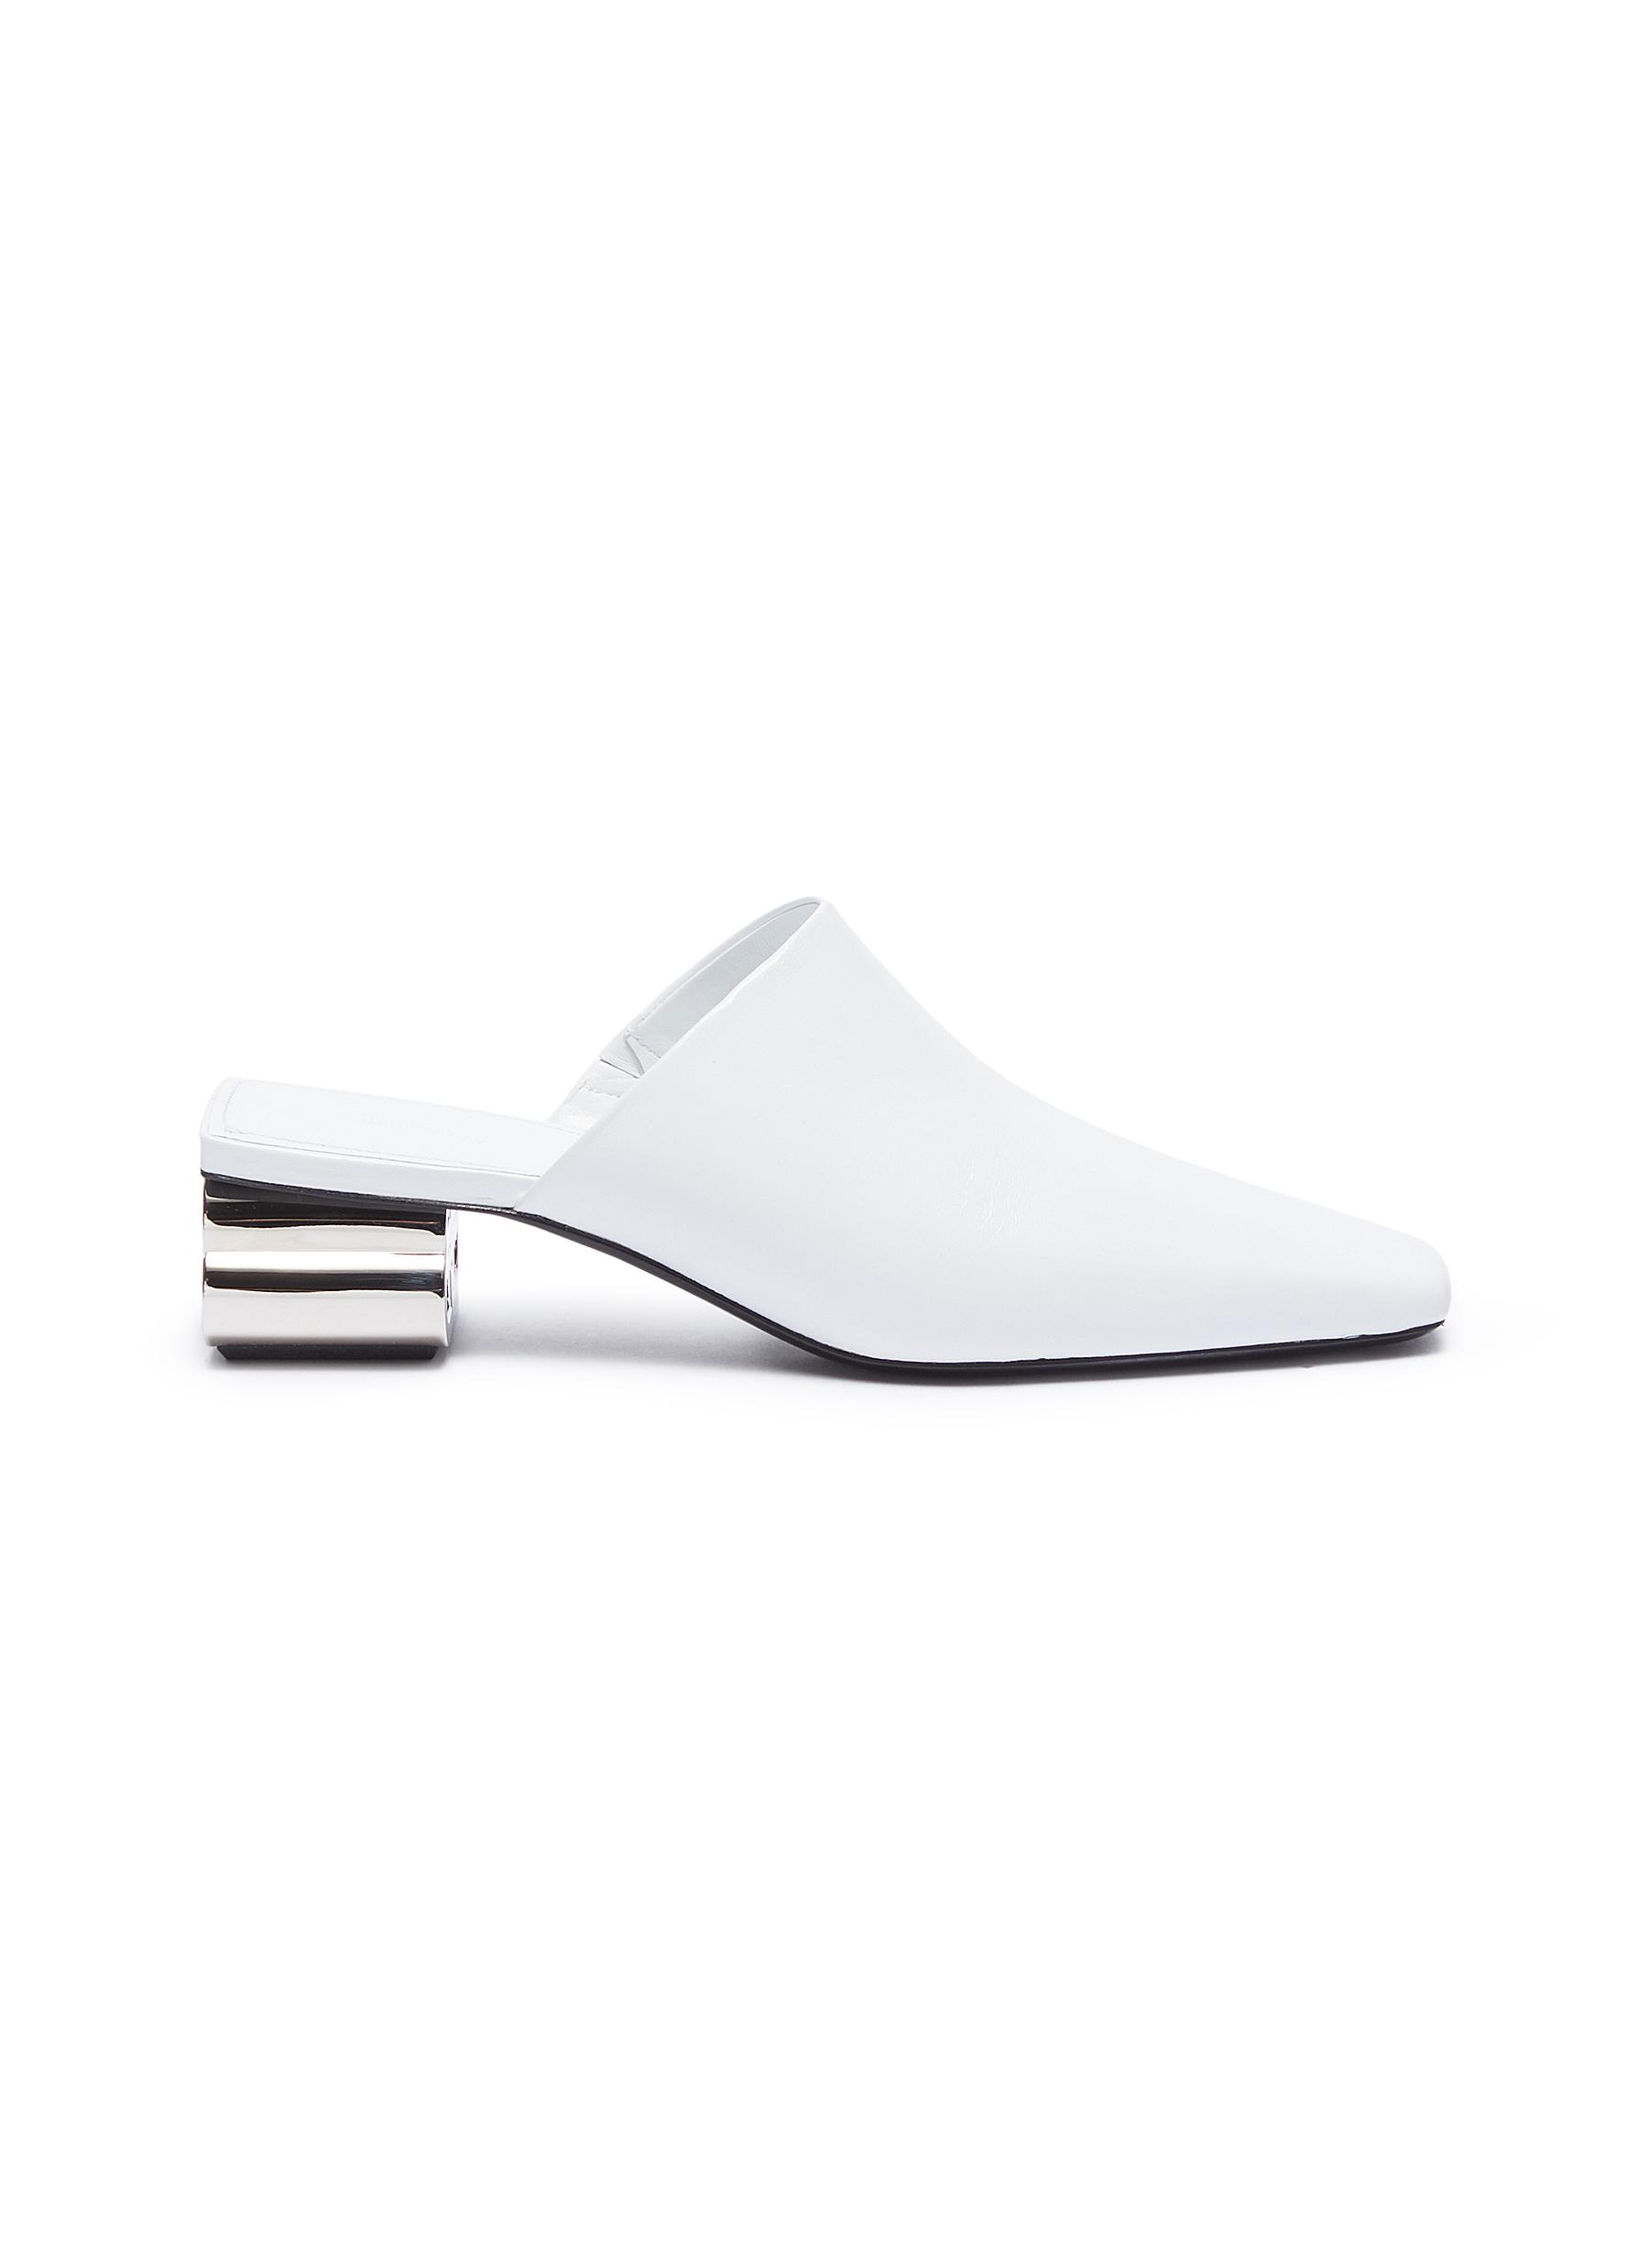 Typo metal heel mule pumps by Balenciaga | Coshio Online Shop